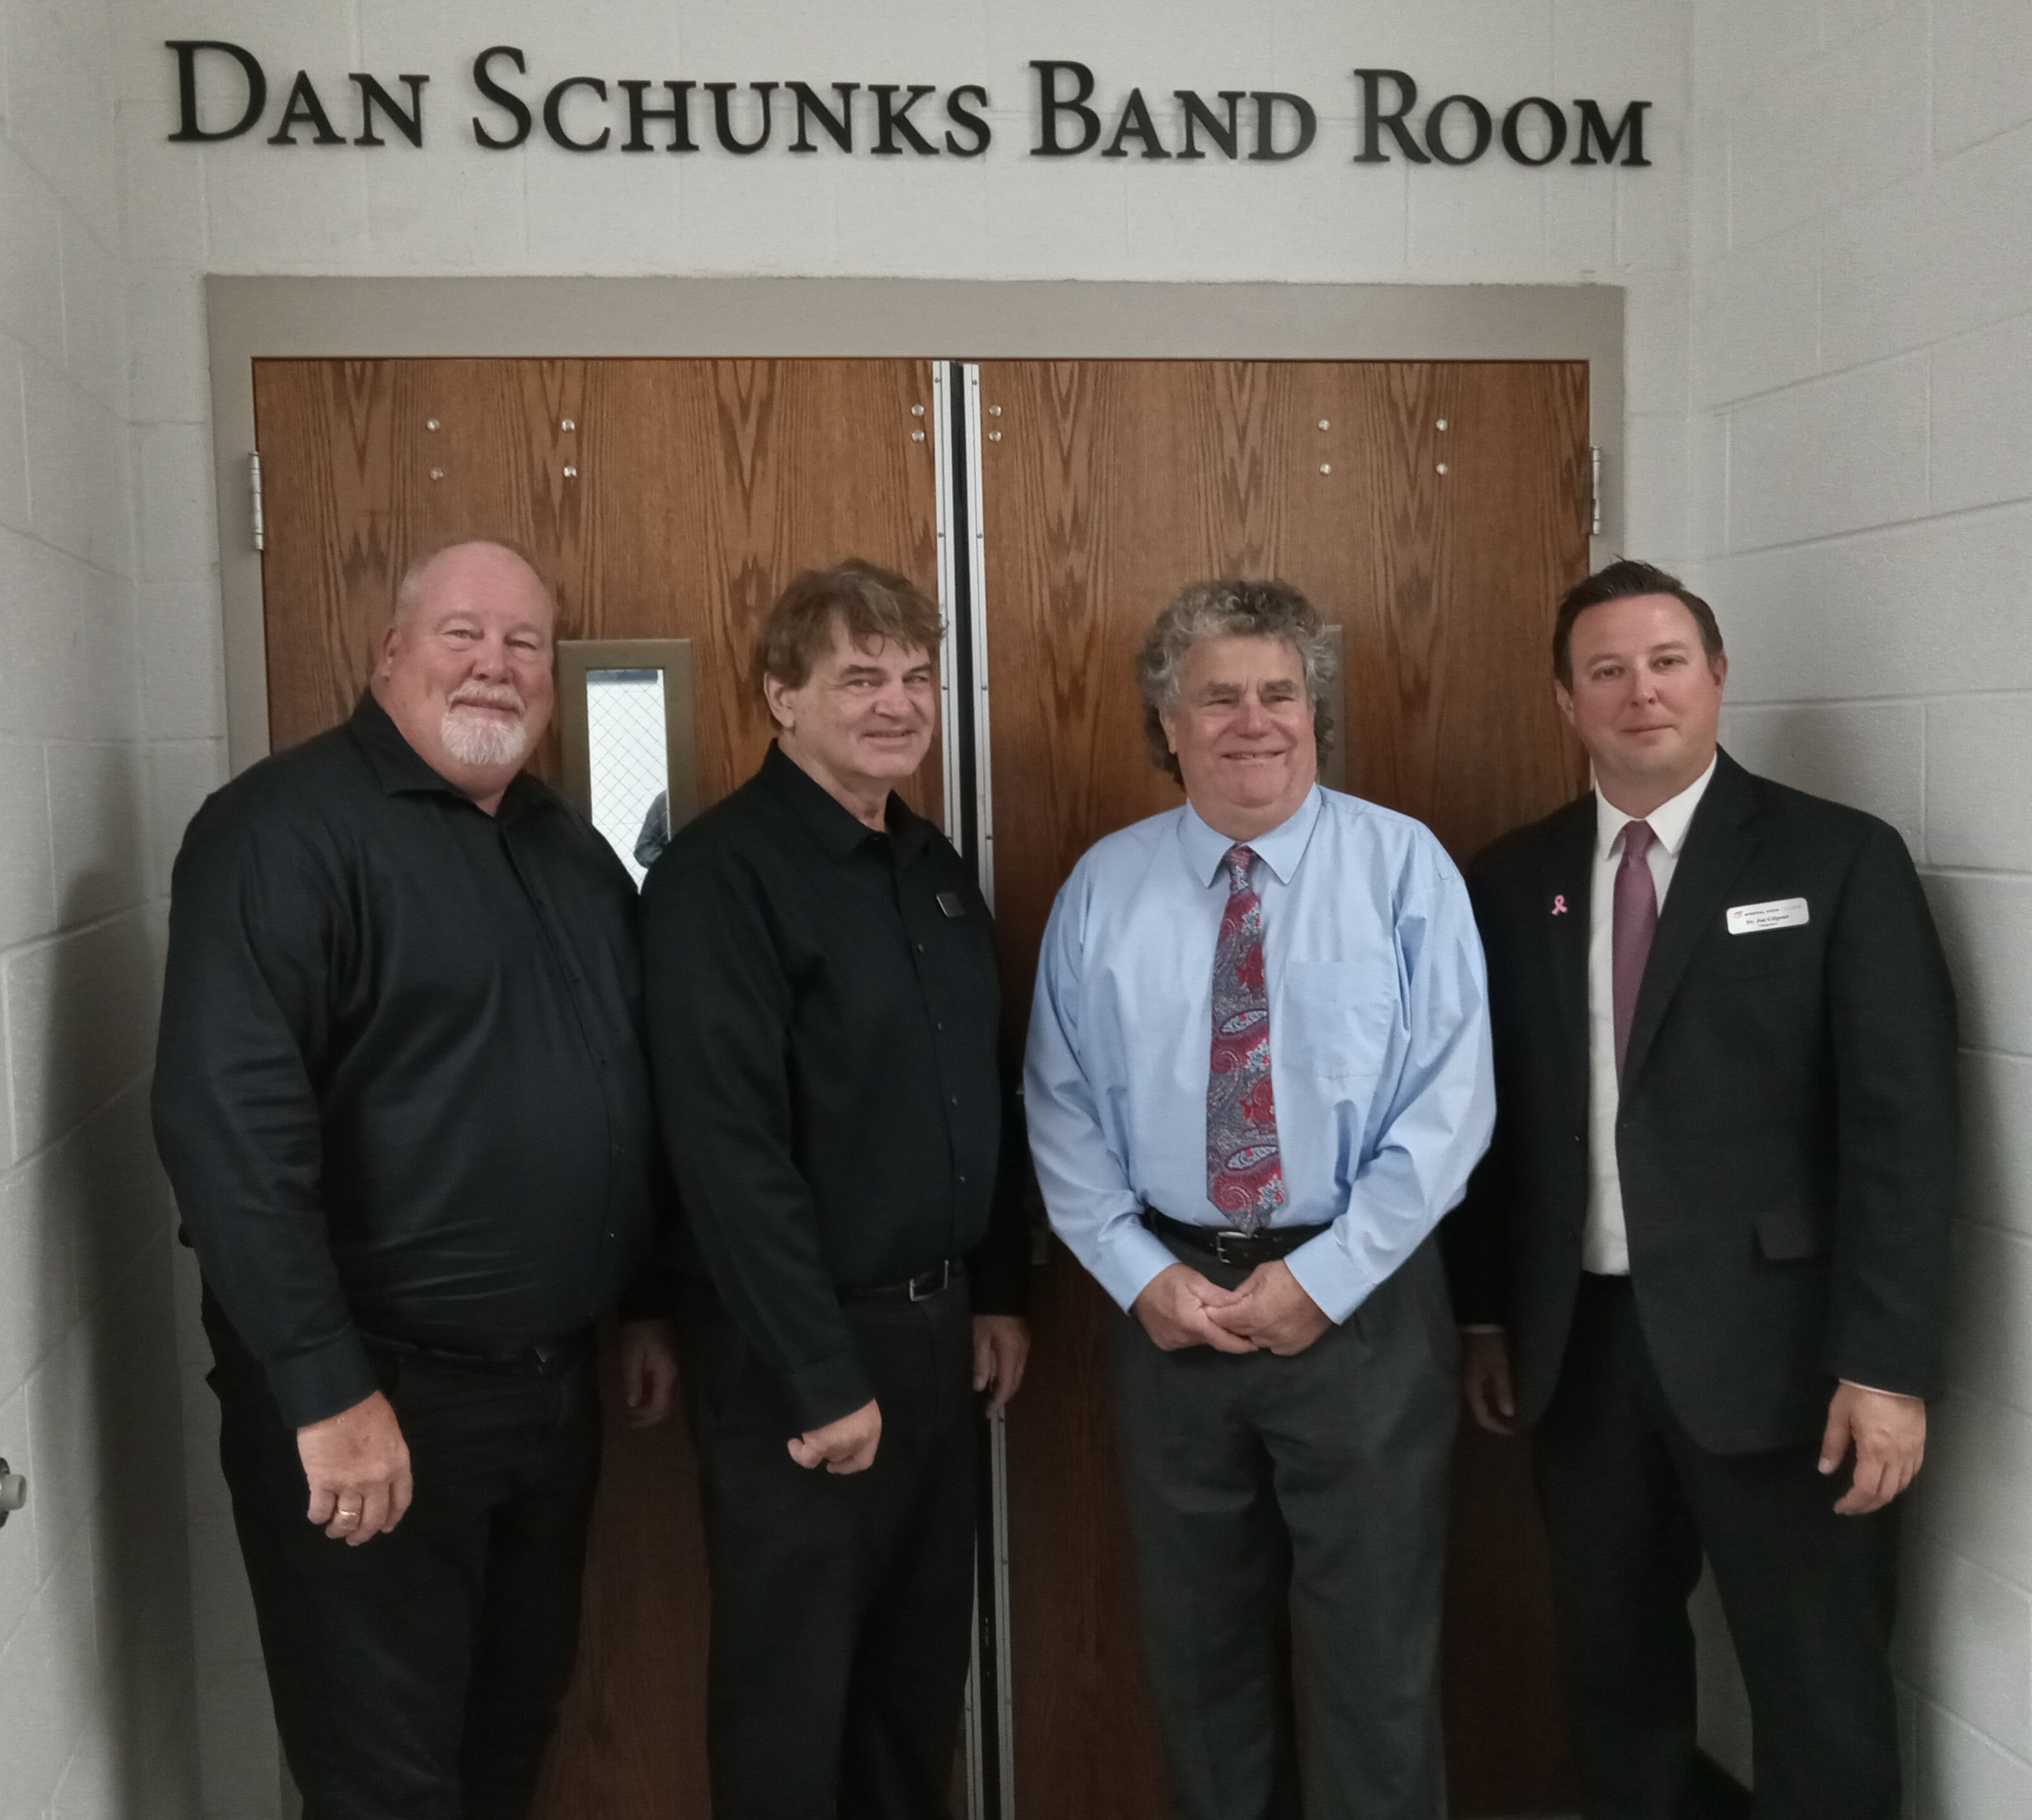 Schunks Band Room Dedication